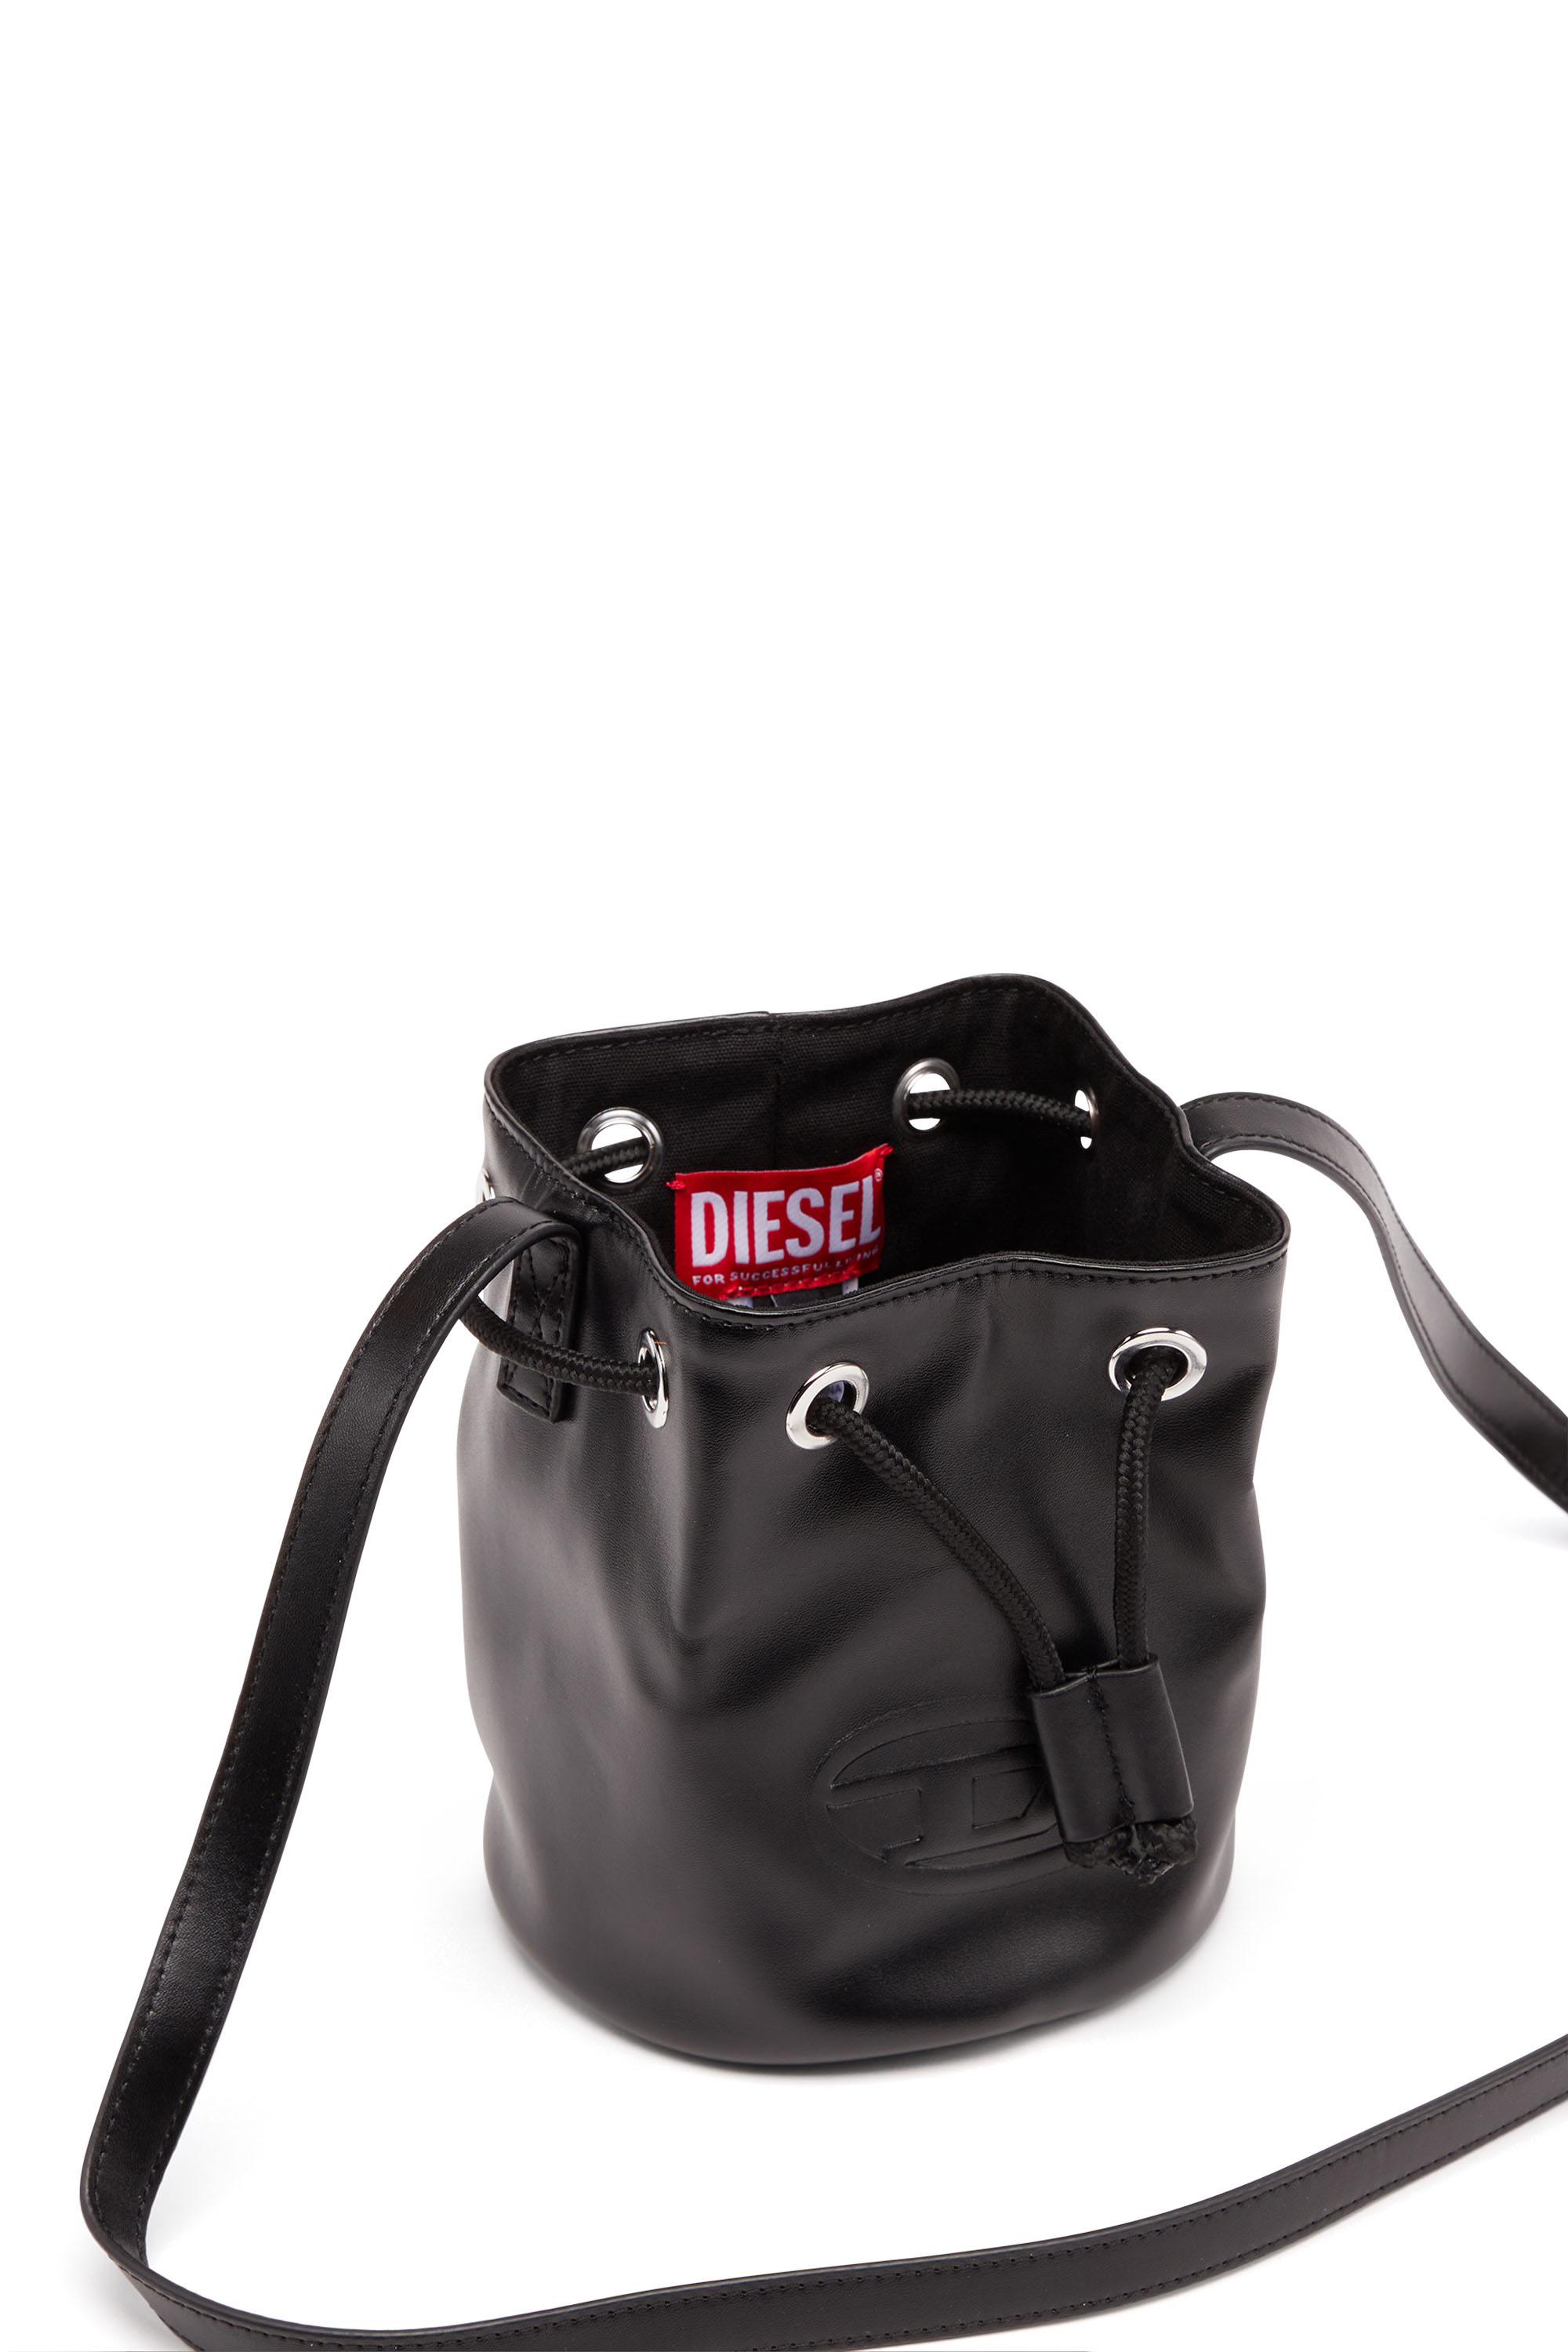 Diesel - WELLTY, Negro - Image 5